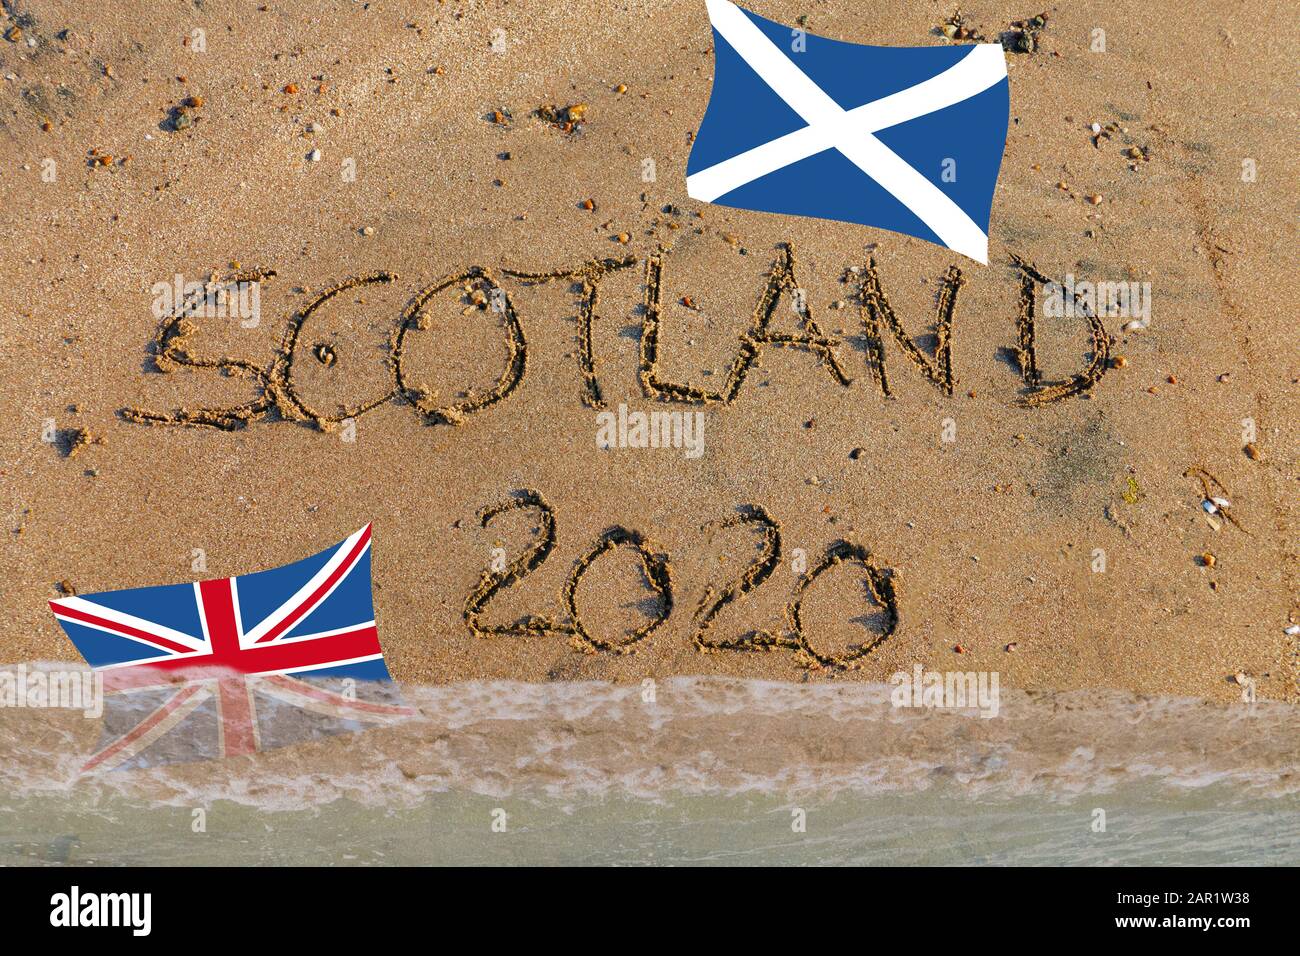 Brexit, Referendum, Scozia 2020 a Sand geschrieben, mit schottischer Flagge und Union Jack Foto Stock